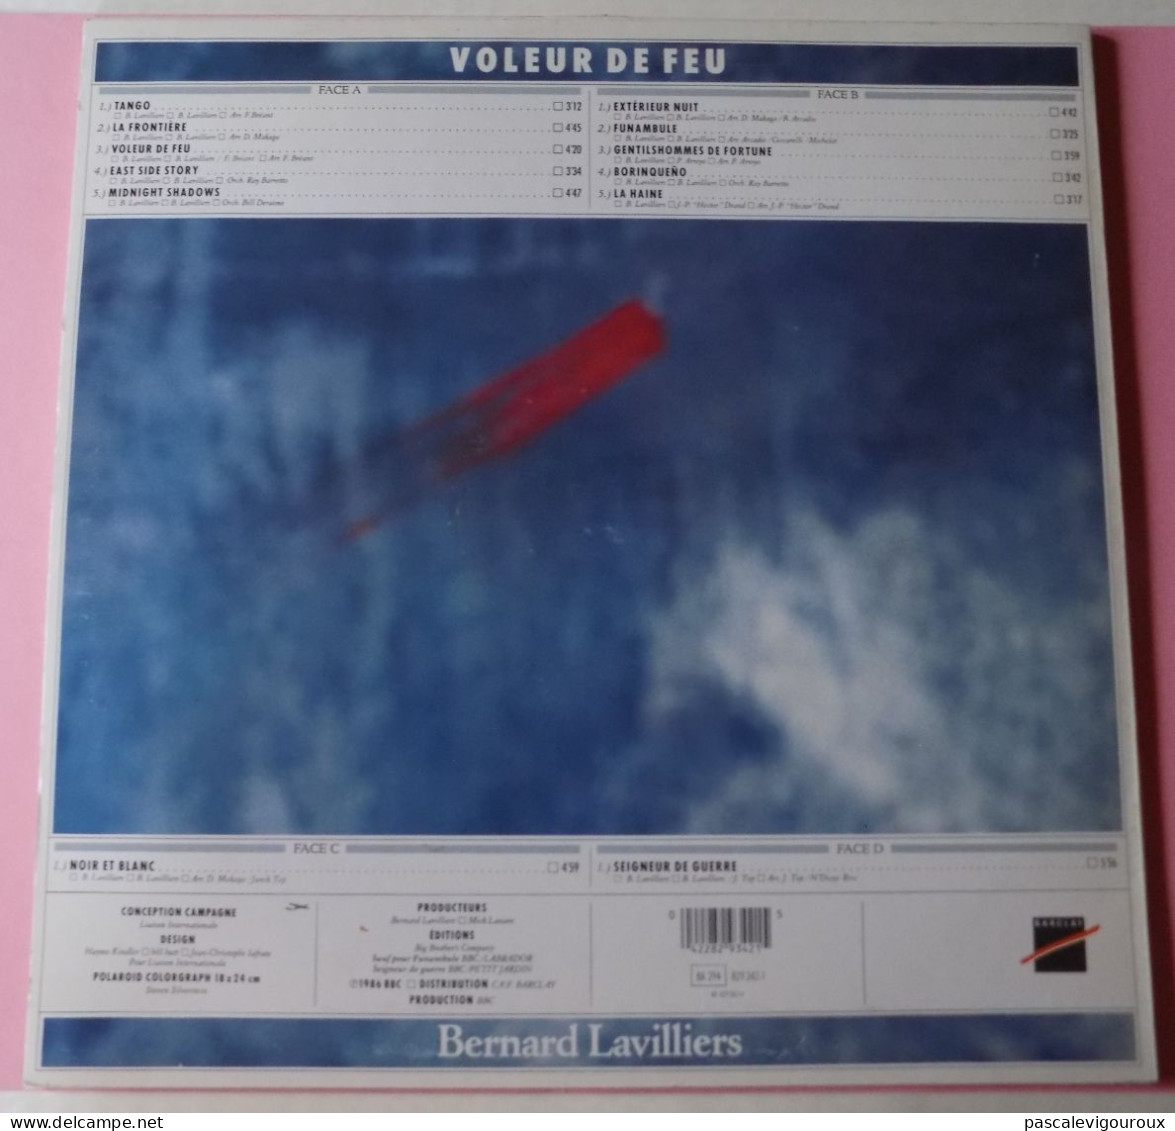 BERNARD LAVILLIERS VOLEUR DE FEU DOUBLE 33T LP 1986 BARCLAY 829.341/1 2 Disques - Autres - Musique Française